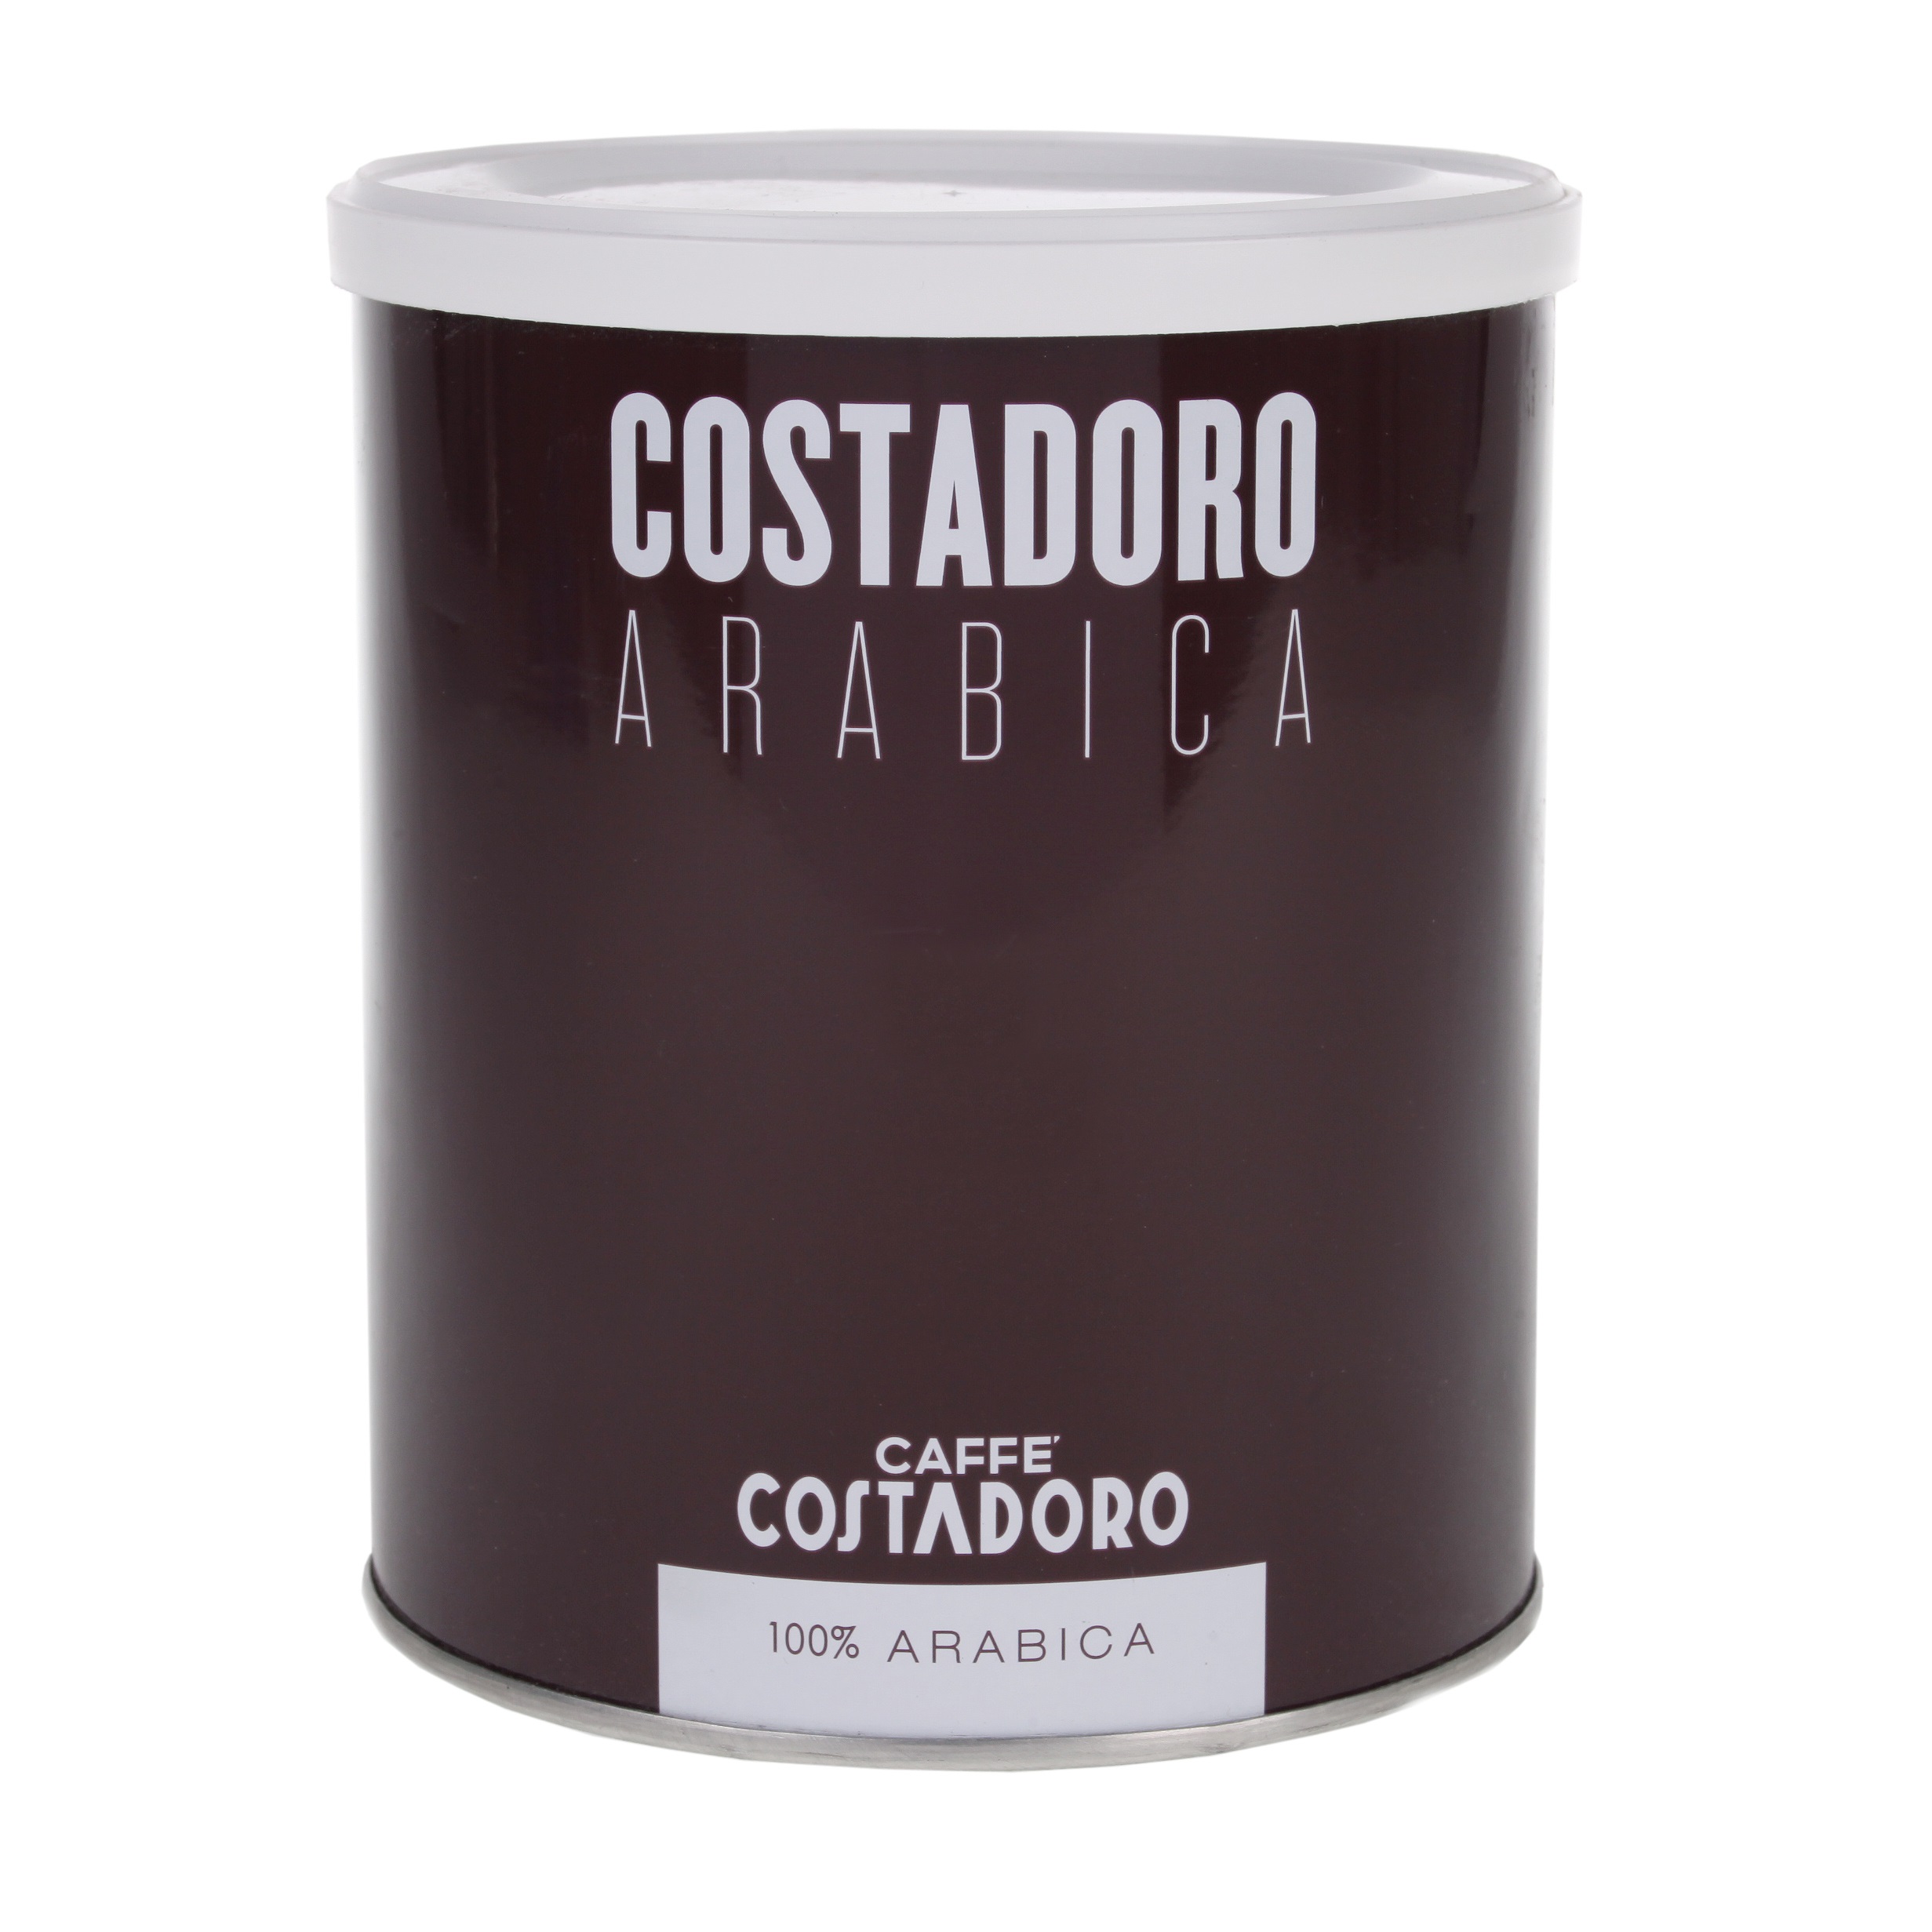 Costadoro Arabica (Masterclub)